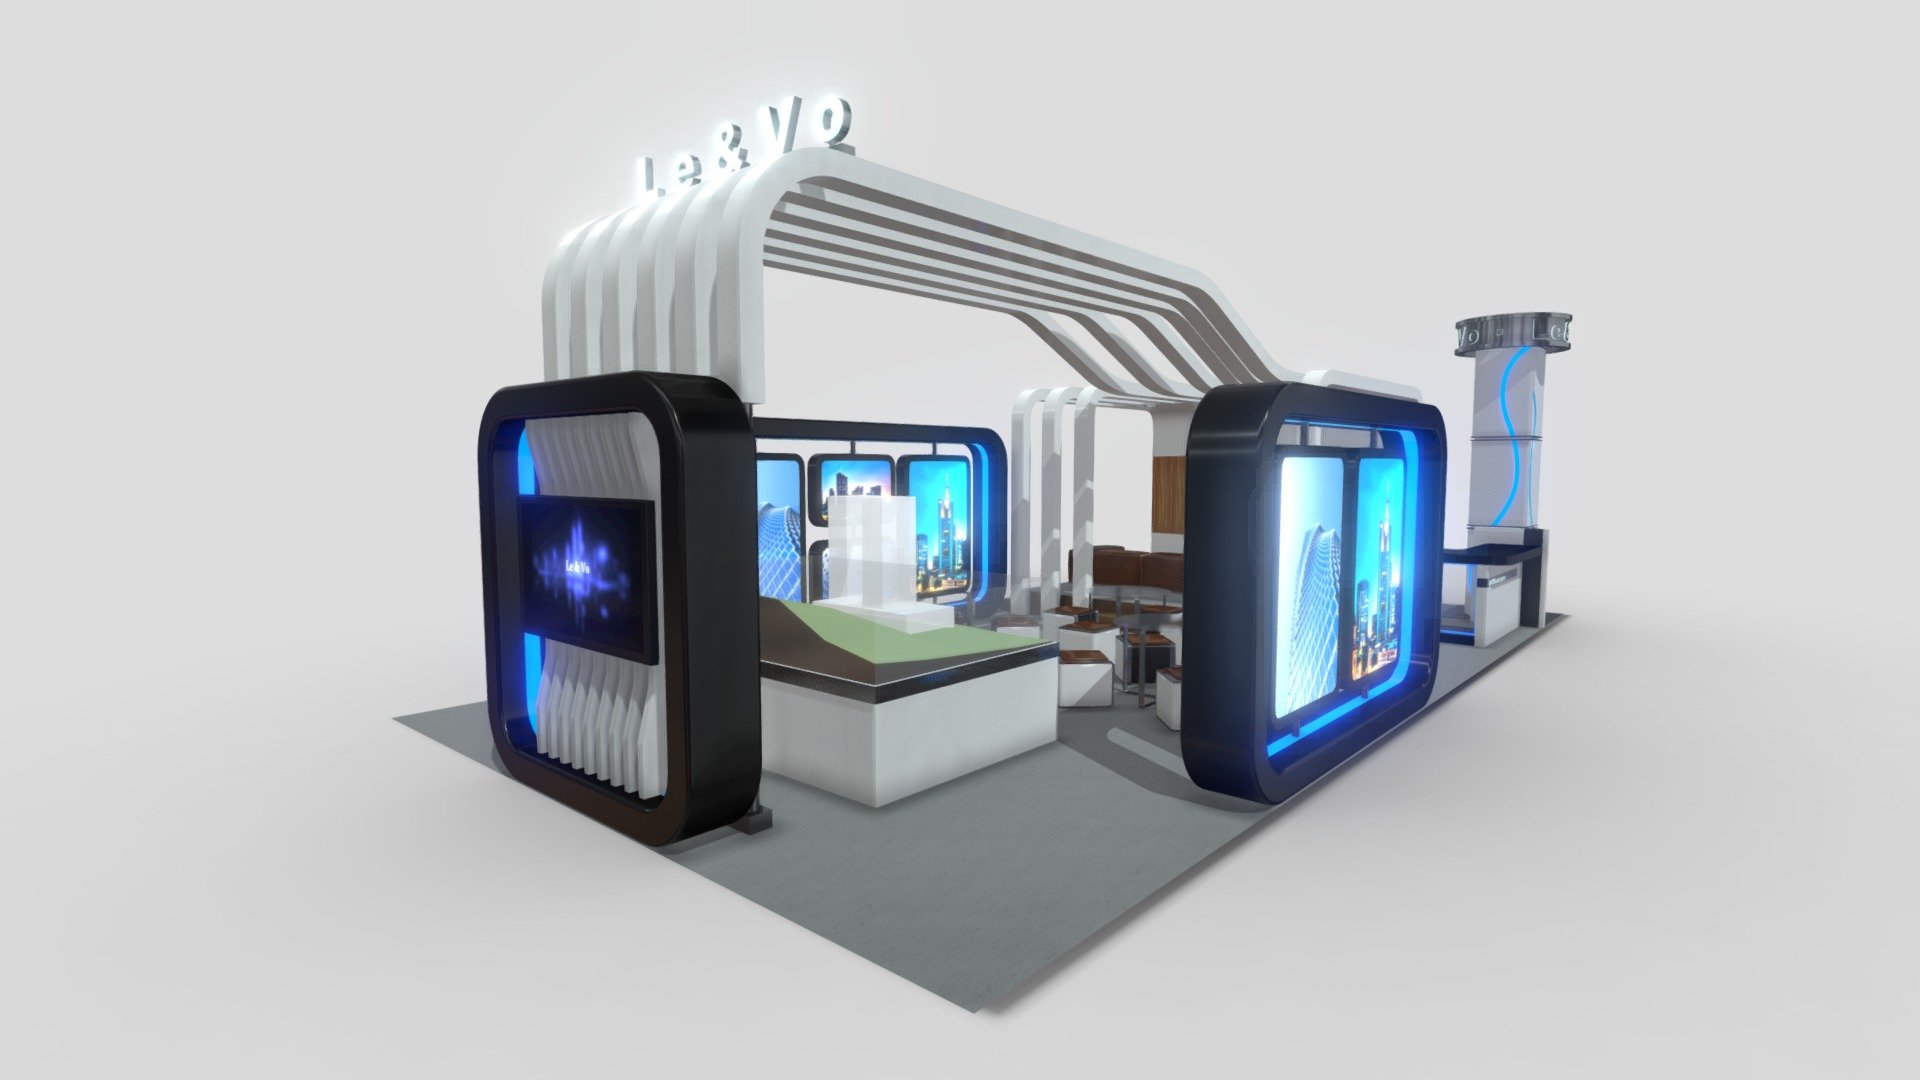 2010-07 (LB V02-03) Real Estate Booth Concept Design edited in 2022 3d model